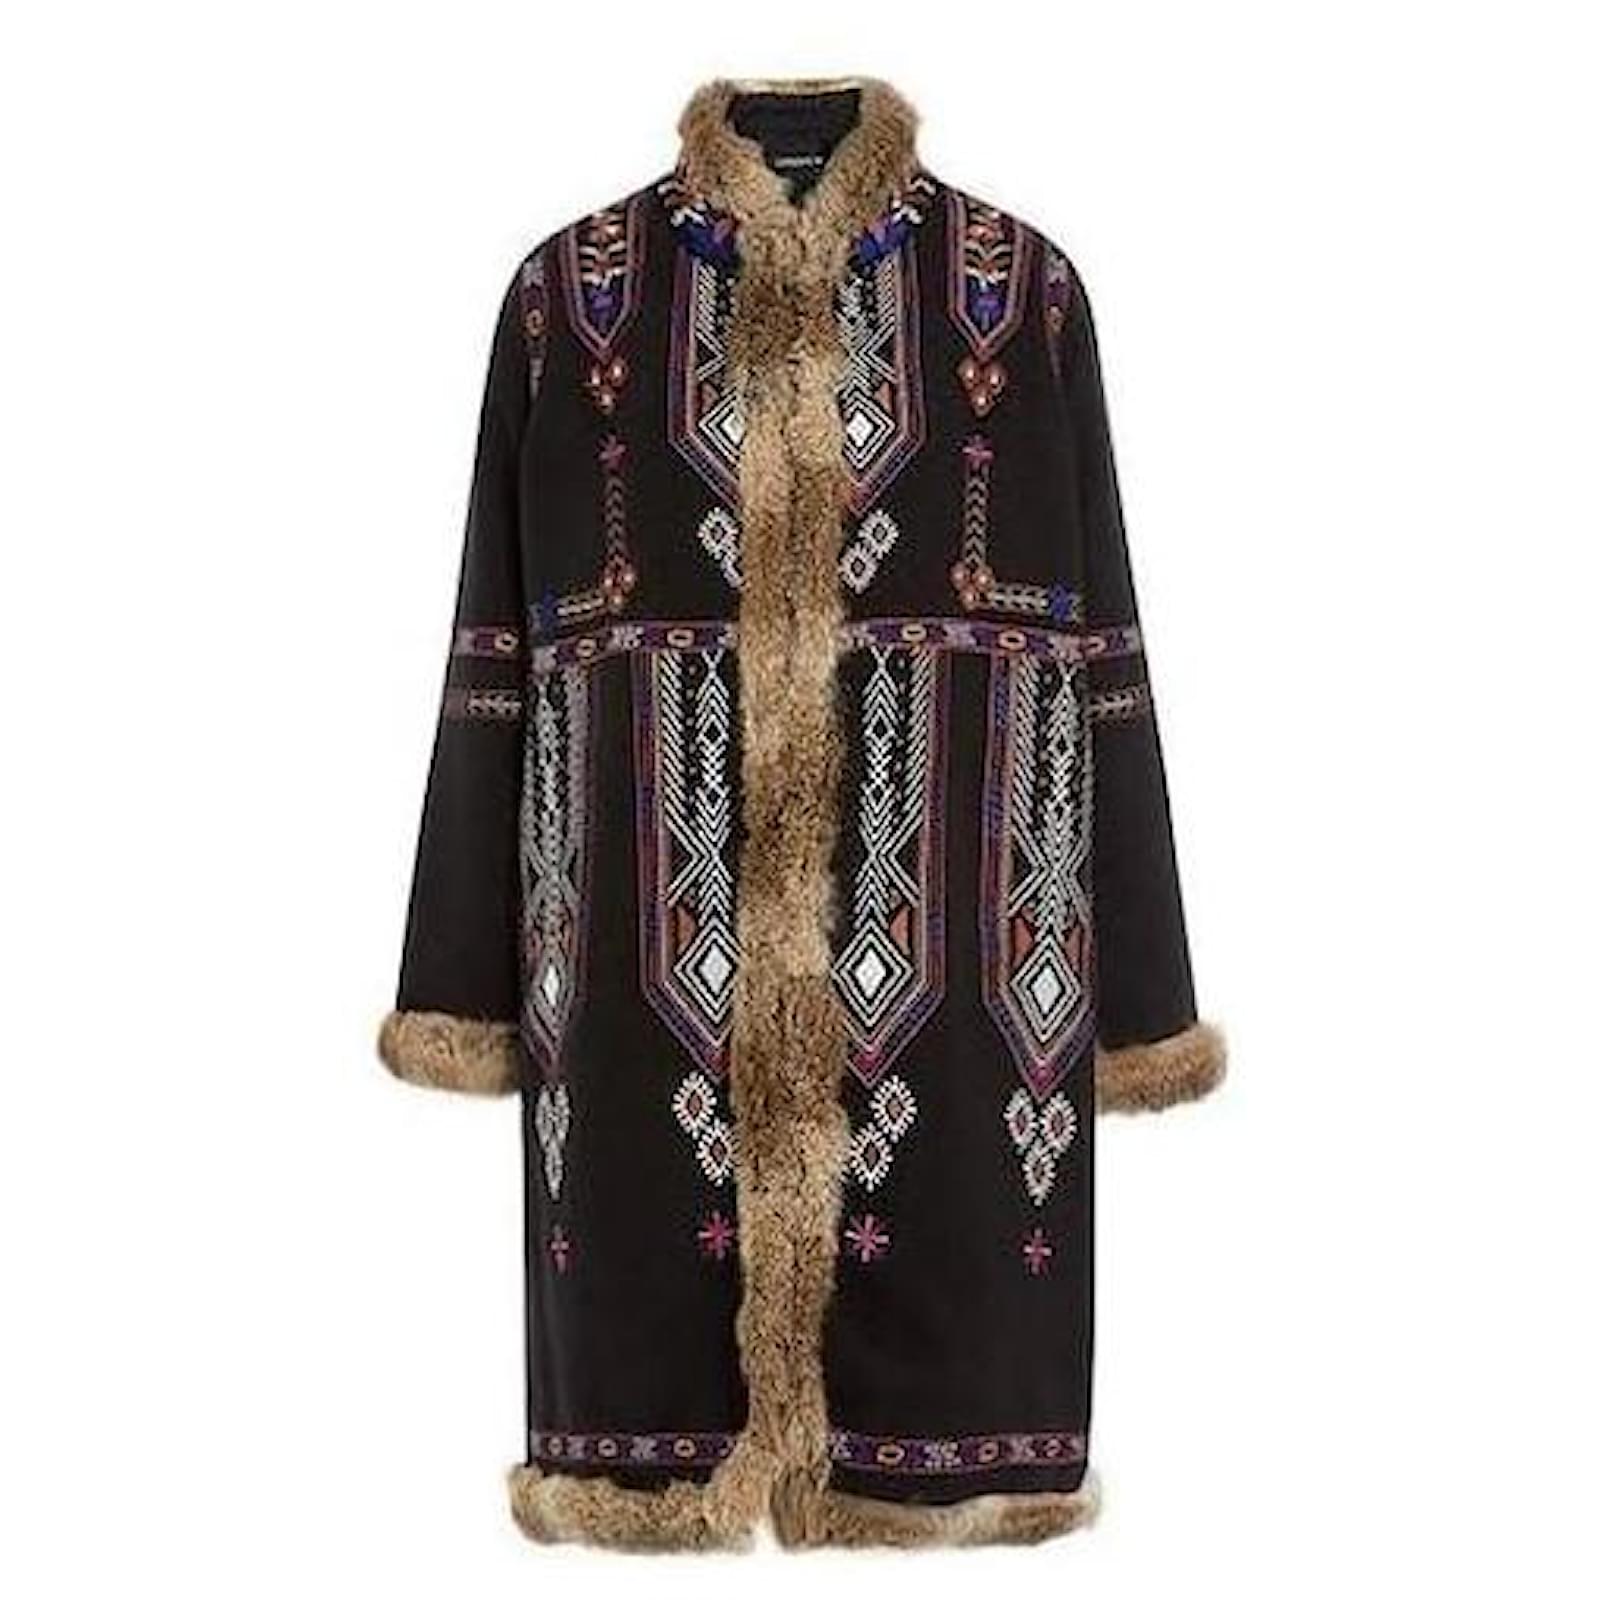 manteau antik batik